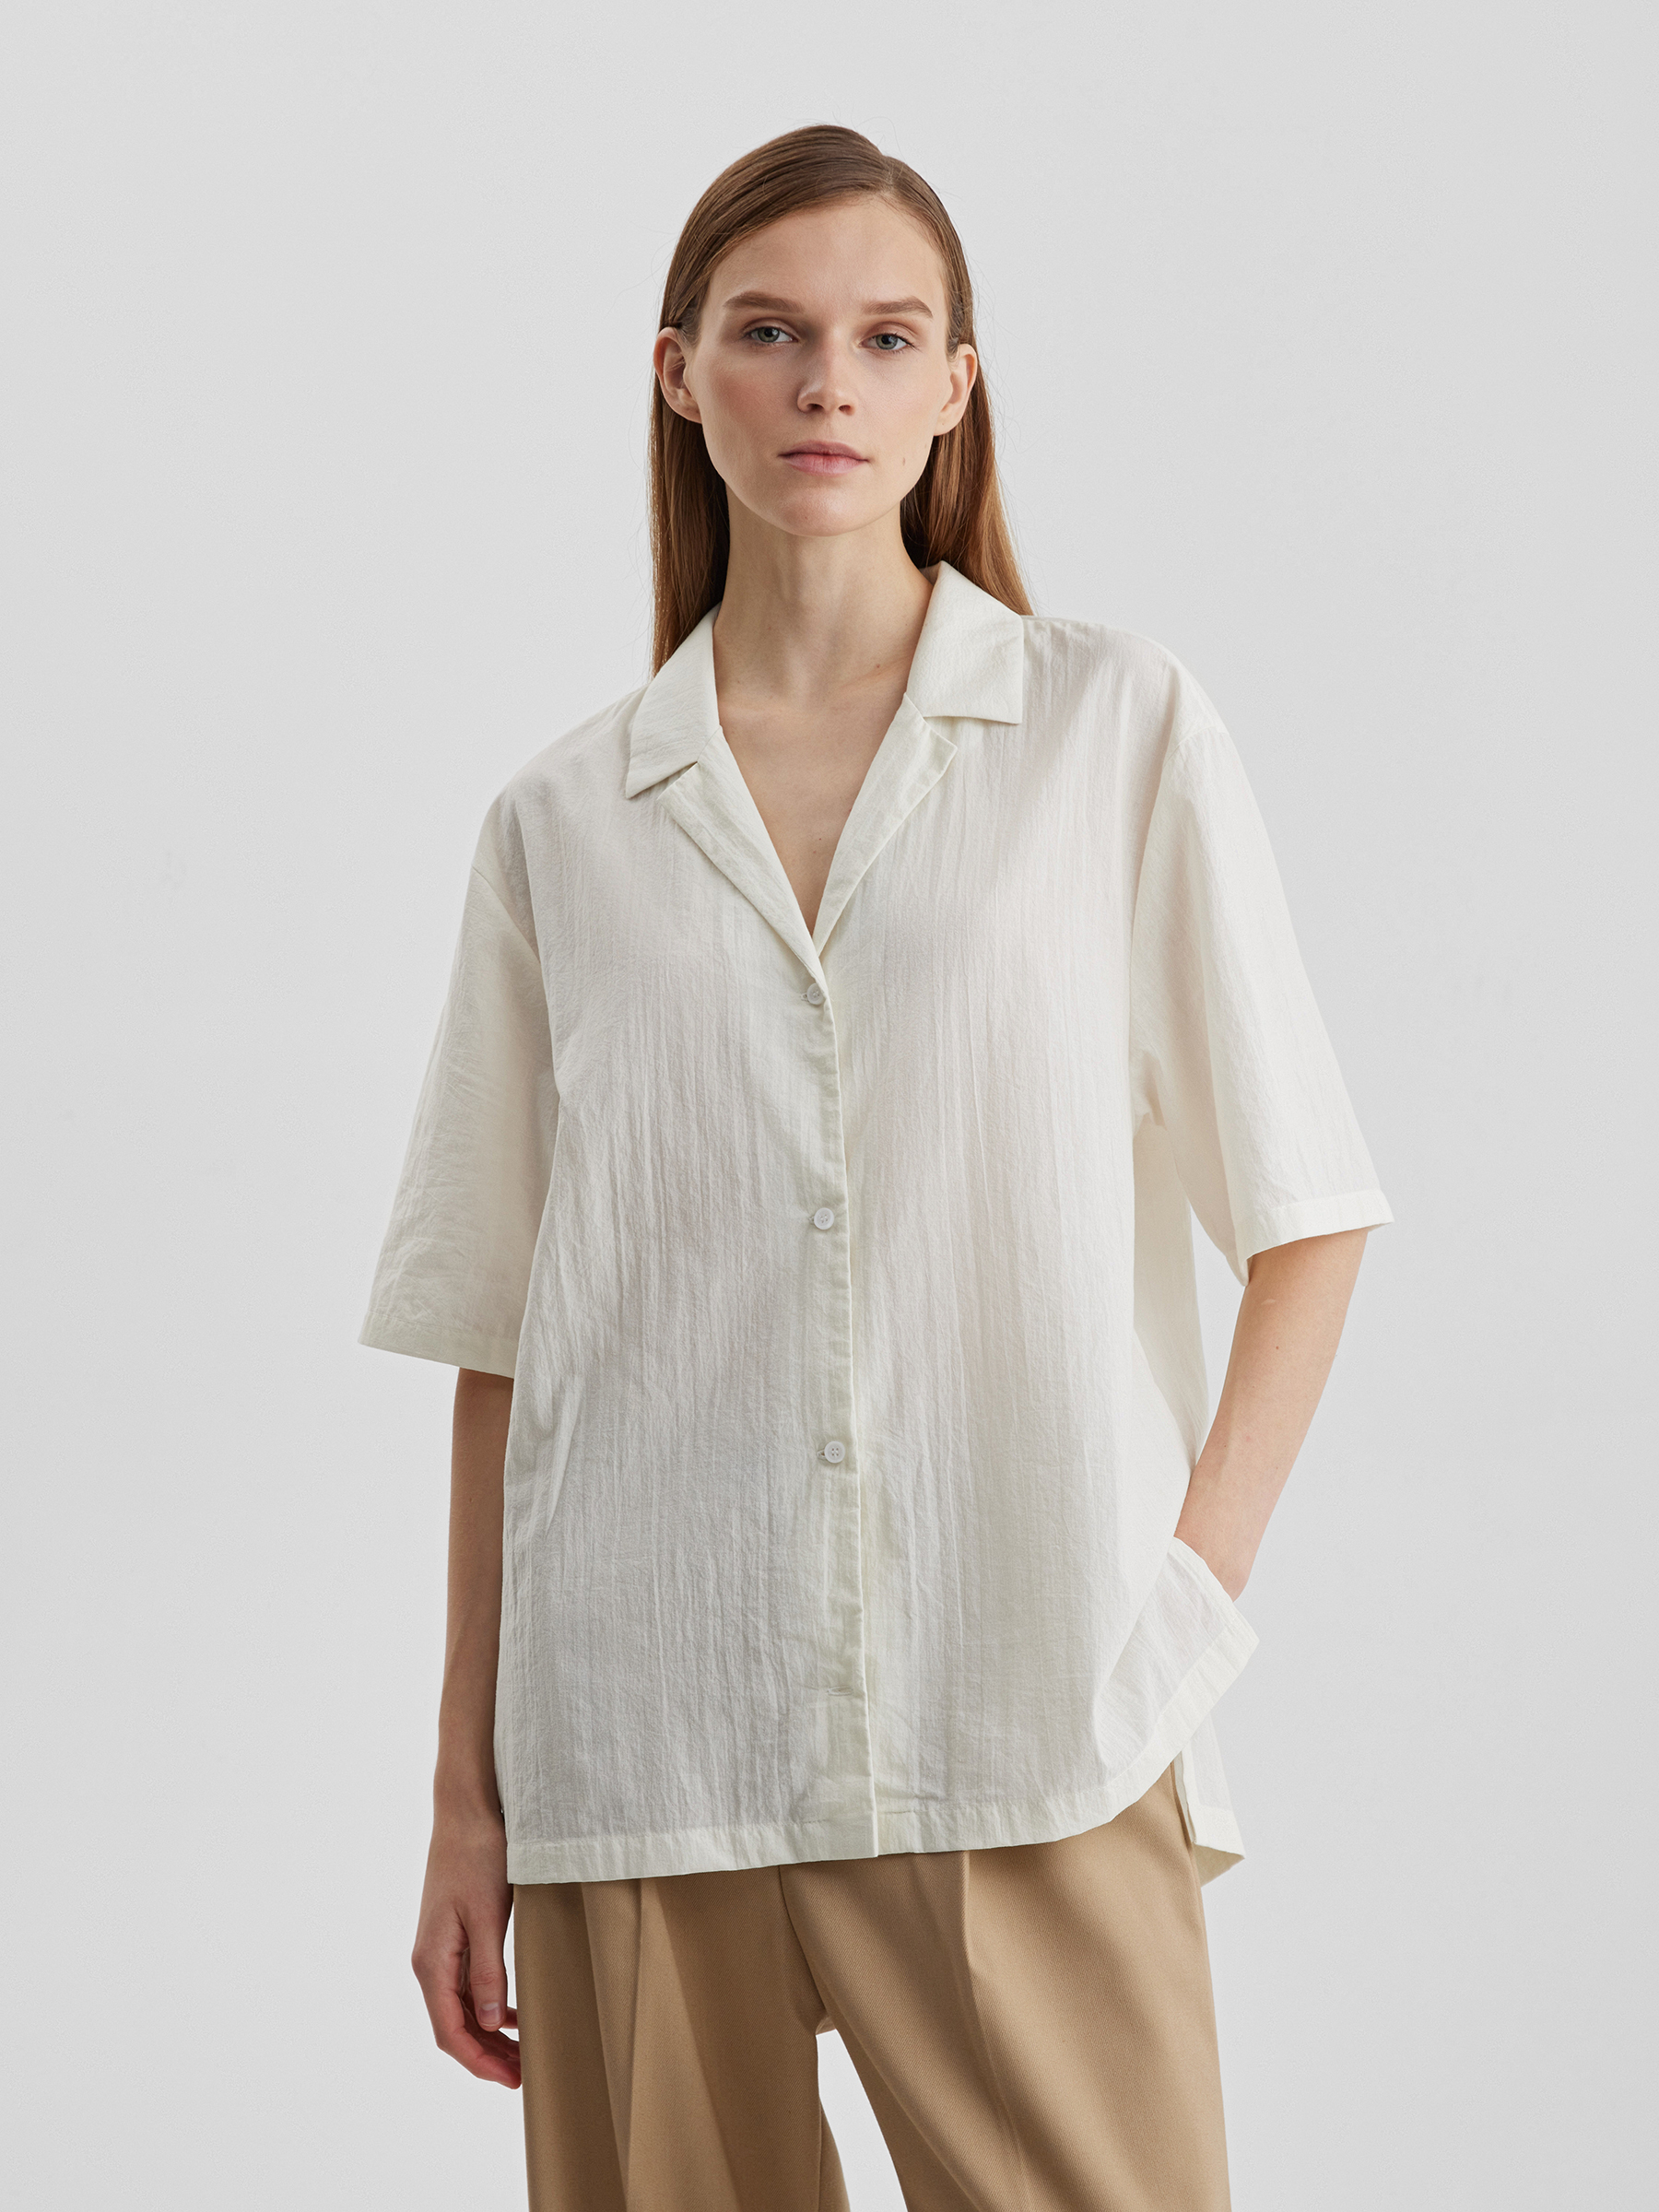 Рубашка женская с коротким рукавом из лёгкого хлопка, цвет – молочный фото